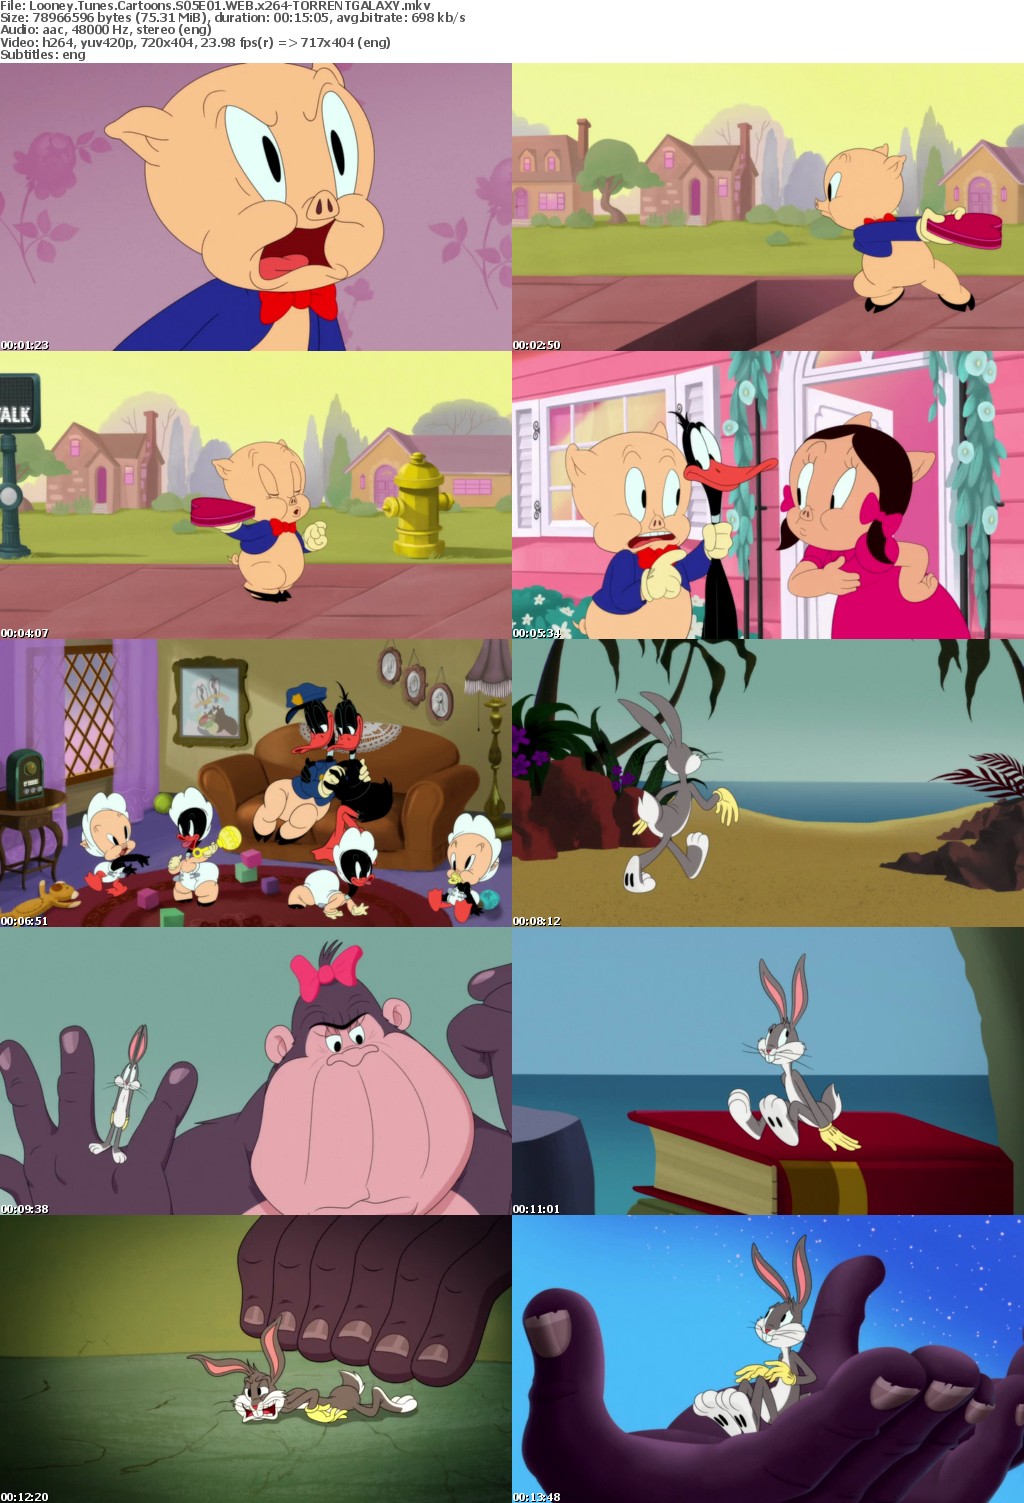 Looney Tunes Cartoons S05E01 WEB x264-GALAXY